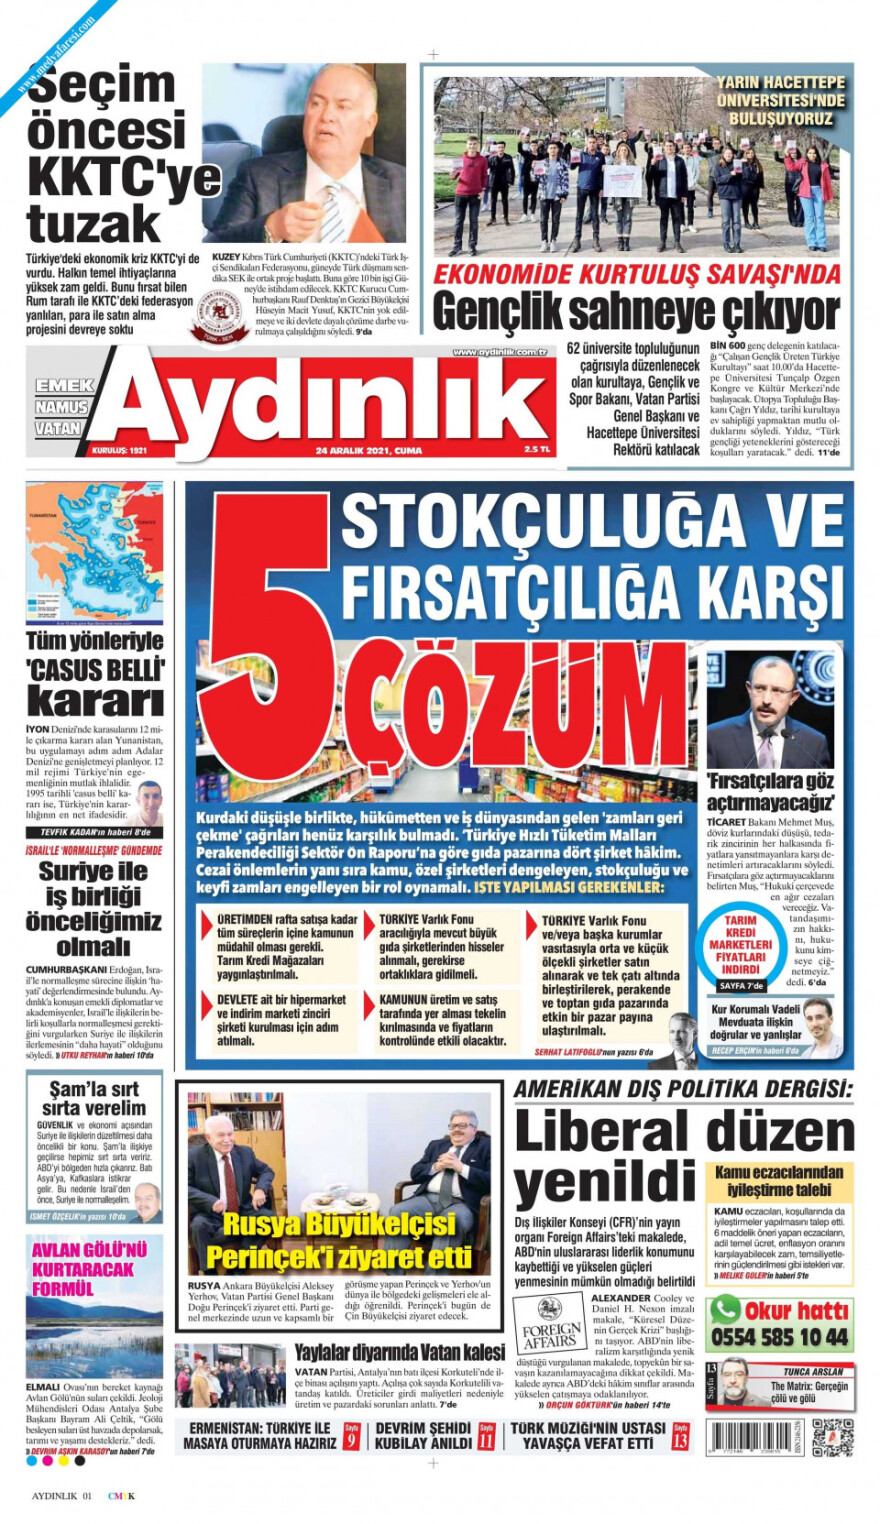 TUrkish media aydinlik